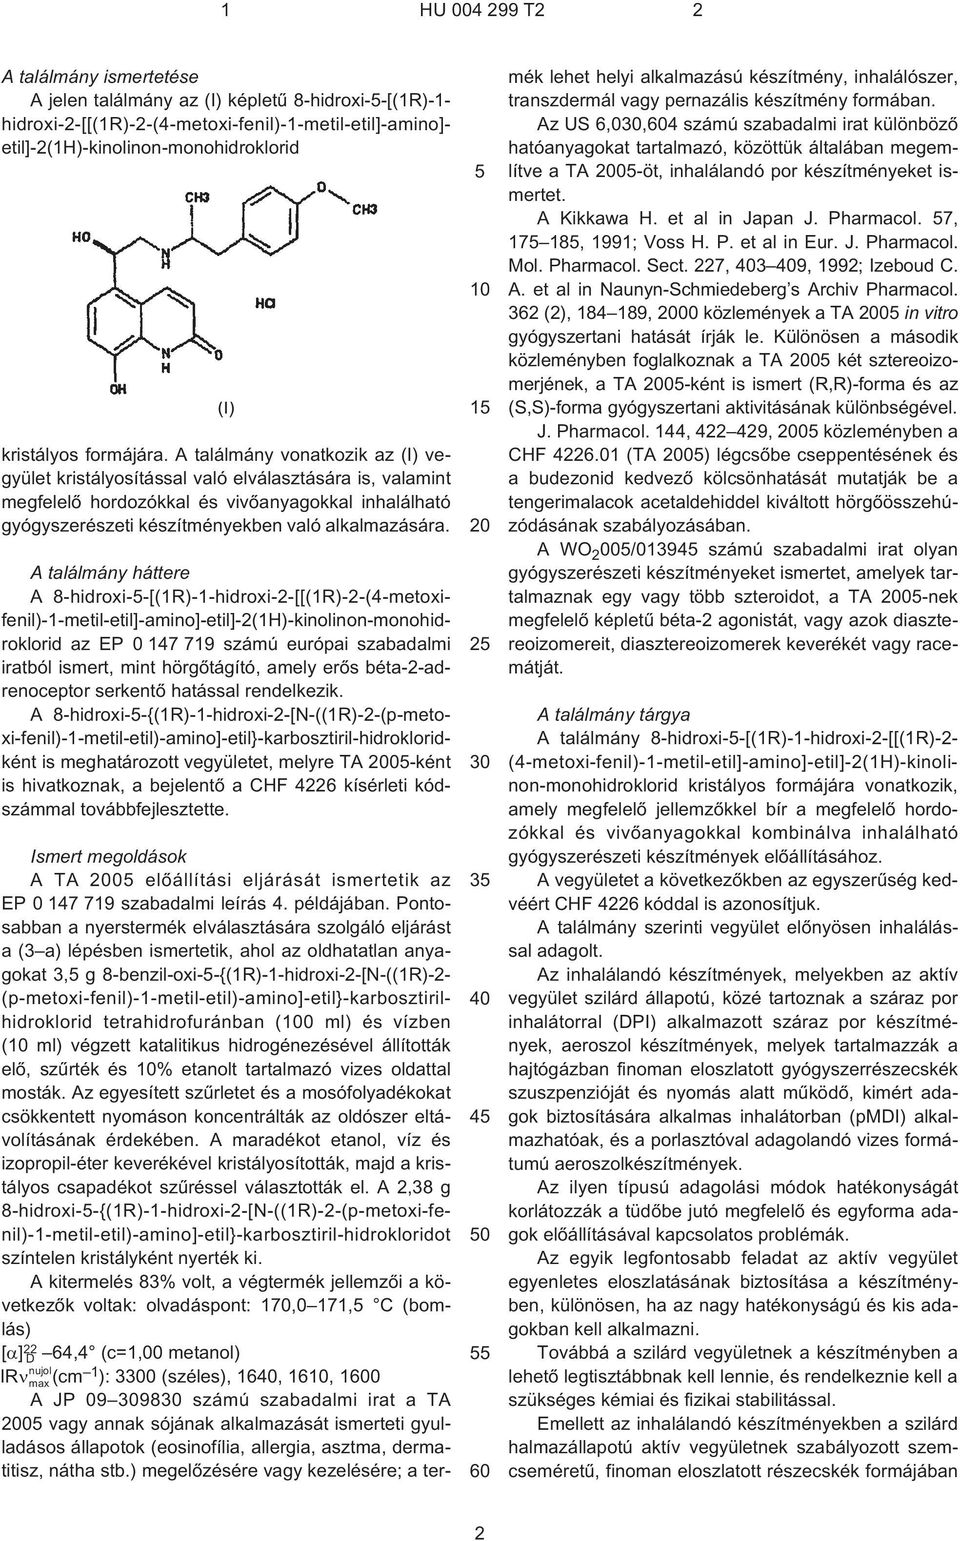 A találmány háttere A 8¹hidroxi--[(1R)-1-hidroxi-2-[[(1R)-2-(4¹metoxifenil)-1-metil-etil]-amino]-etil]-2(1H)-kinolinon-monohidroklorid az EP 0 147 719 számú európai szabadalmi iratból ismert, mint